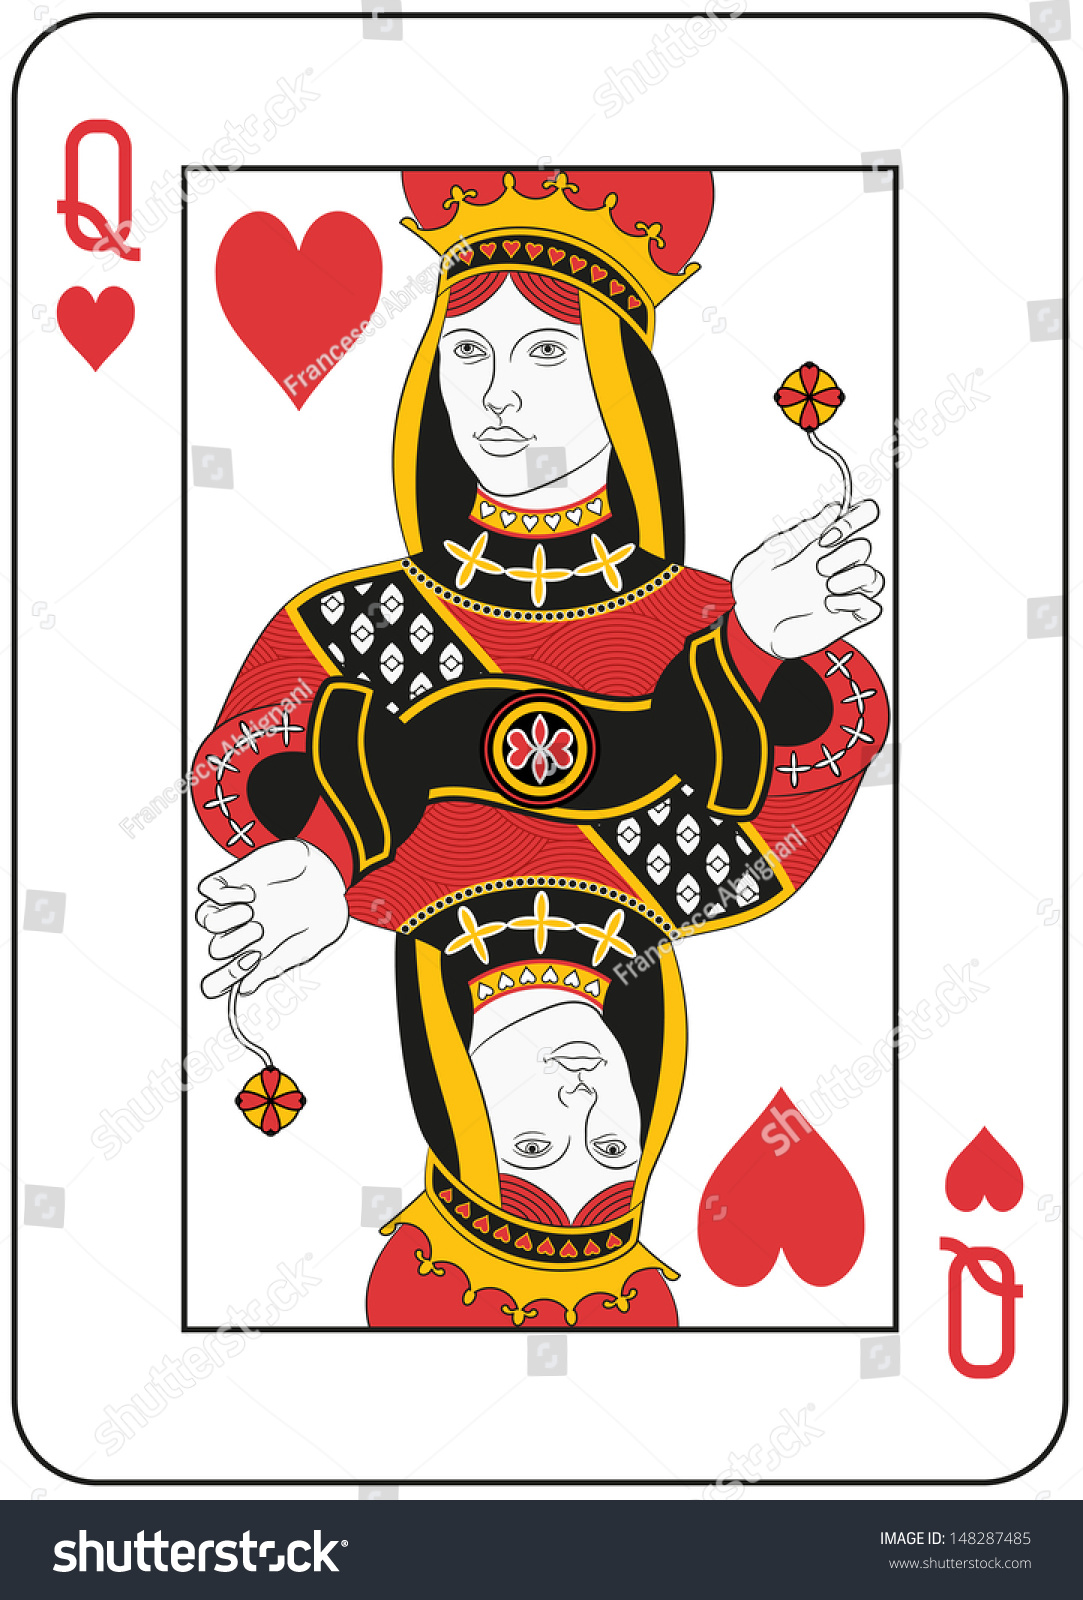 Queen Of Hearts. Original Design Stock Photo 148287485 : Shutterstock